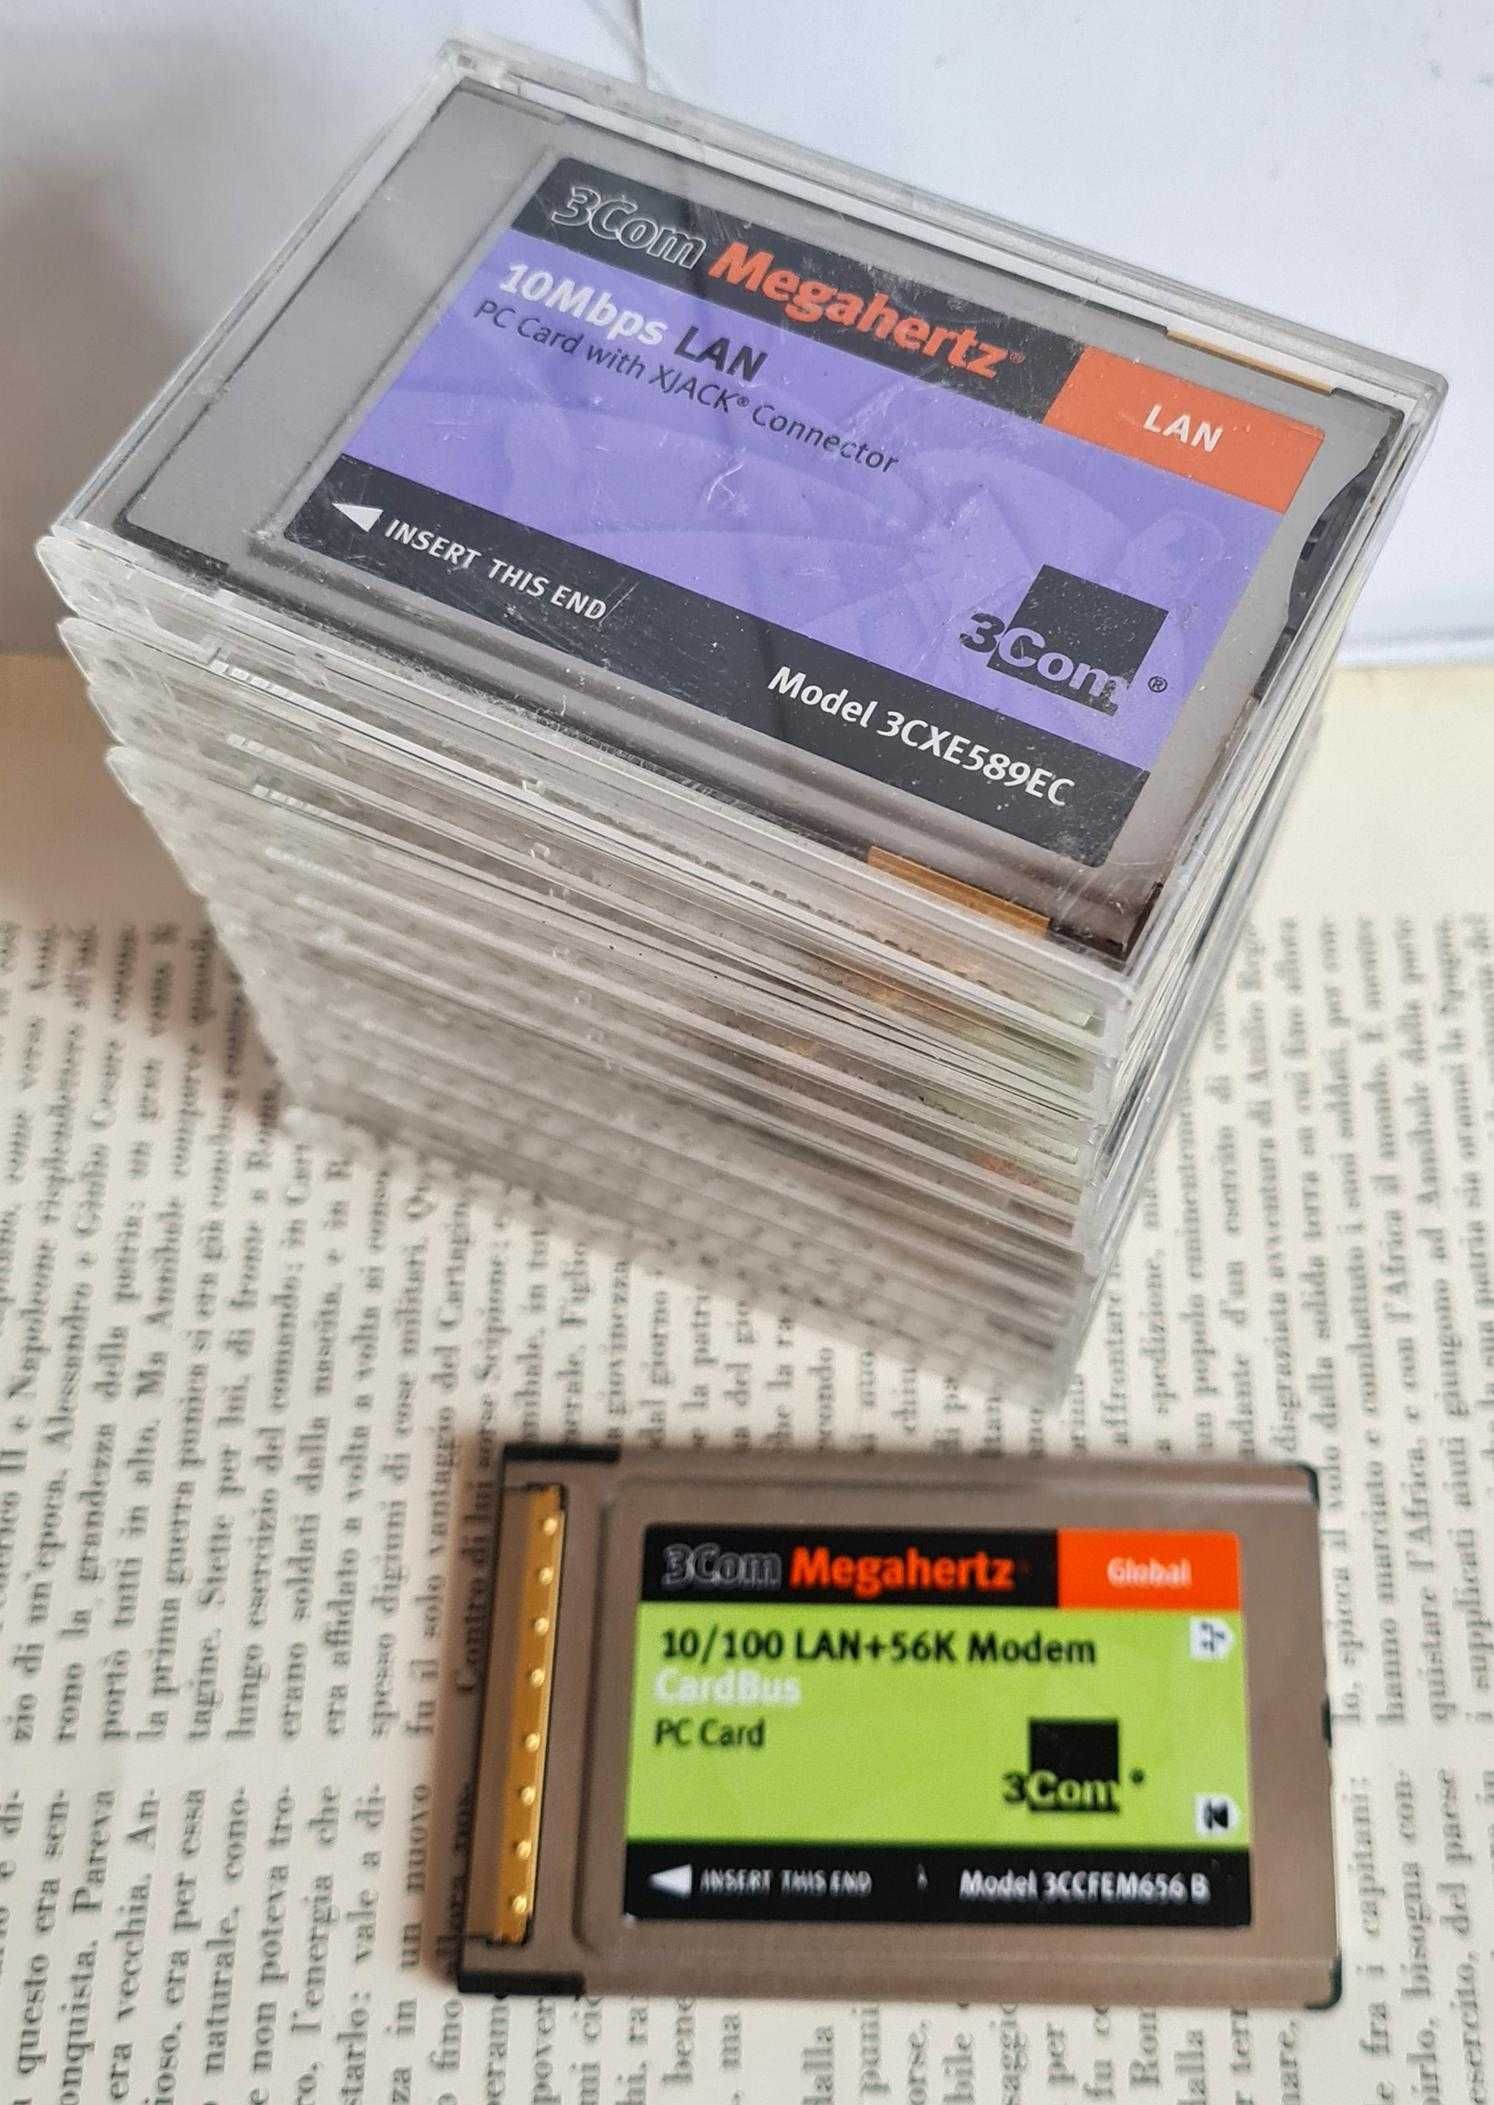 12 bucăți 3Com Megahertz PC Card-uri, condiții foarte bune